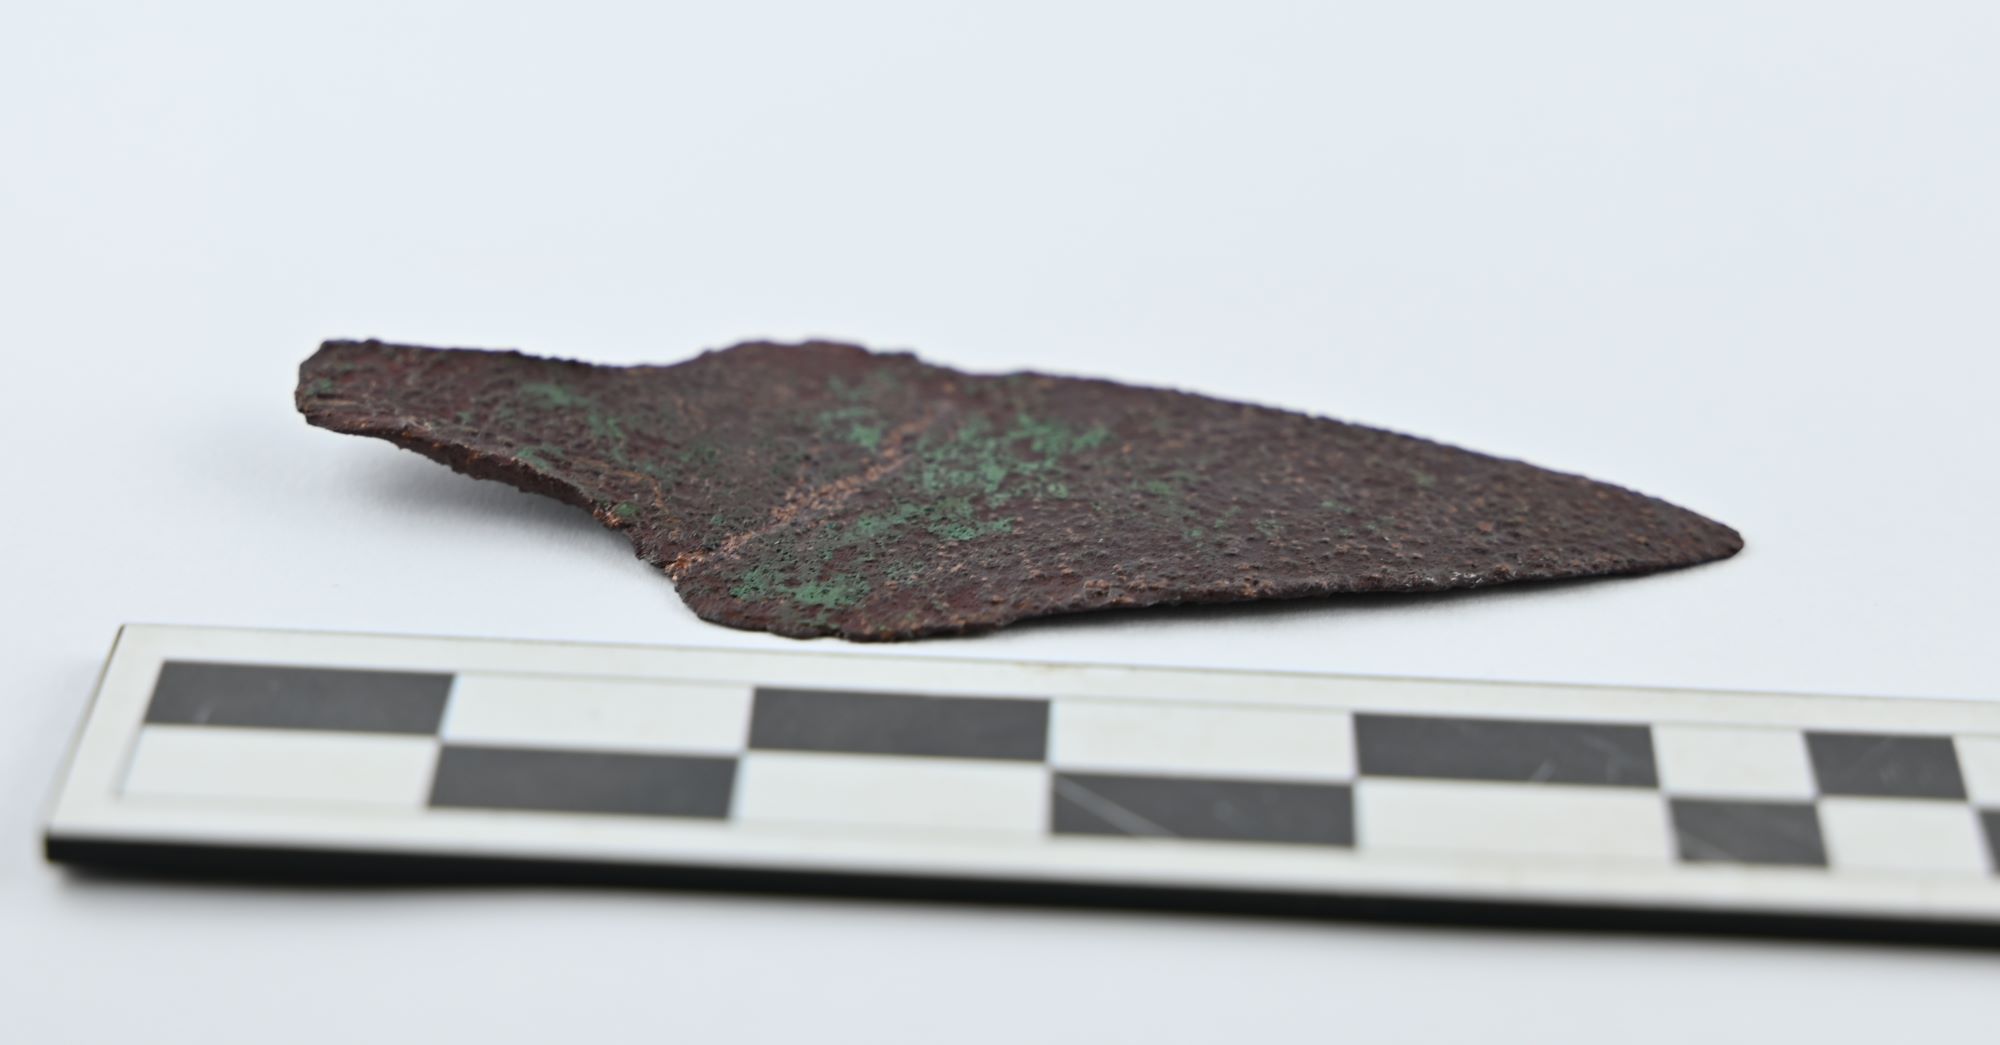 Unikatowy sztylet sprzed ponad 4 tys. lat znaleziony w lesie trafił do muzeum